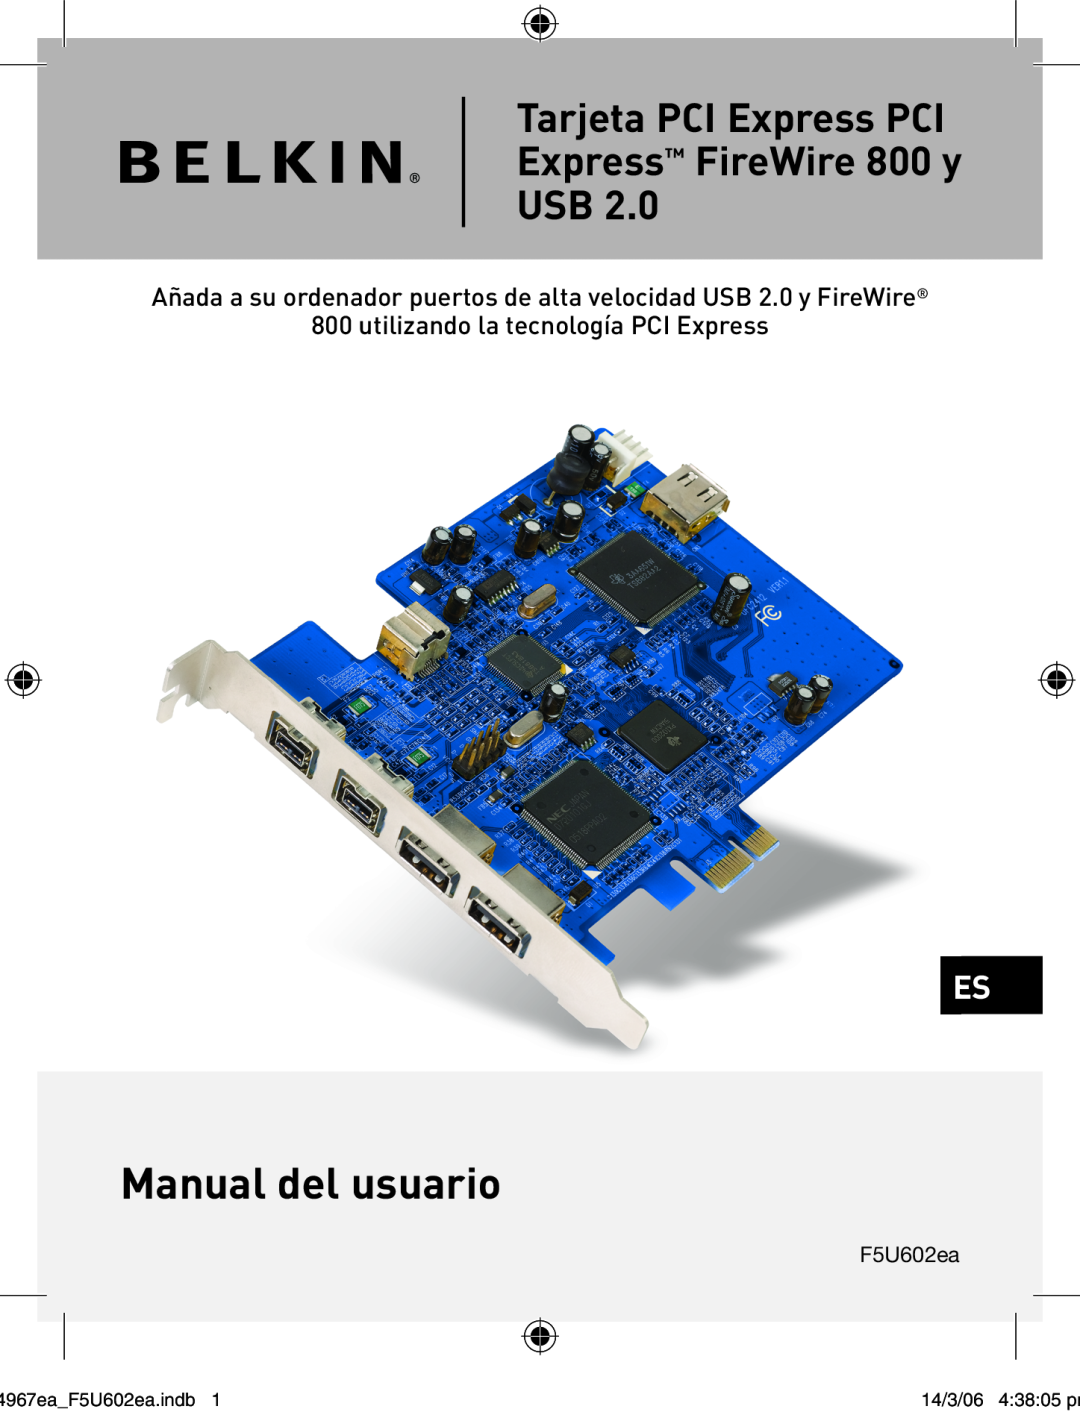 Belkin F5U602EA user manual Manual del usuario, Tarjeta PCI Express PCI Express FireWire 800 y USB, 4967eaF5U602ea.indb 